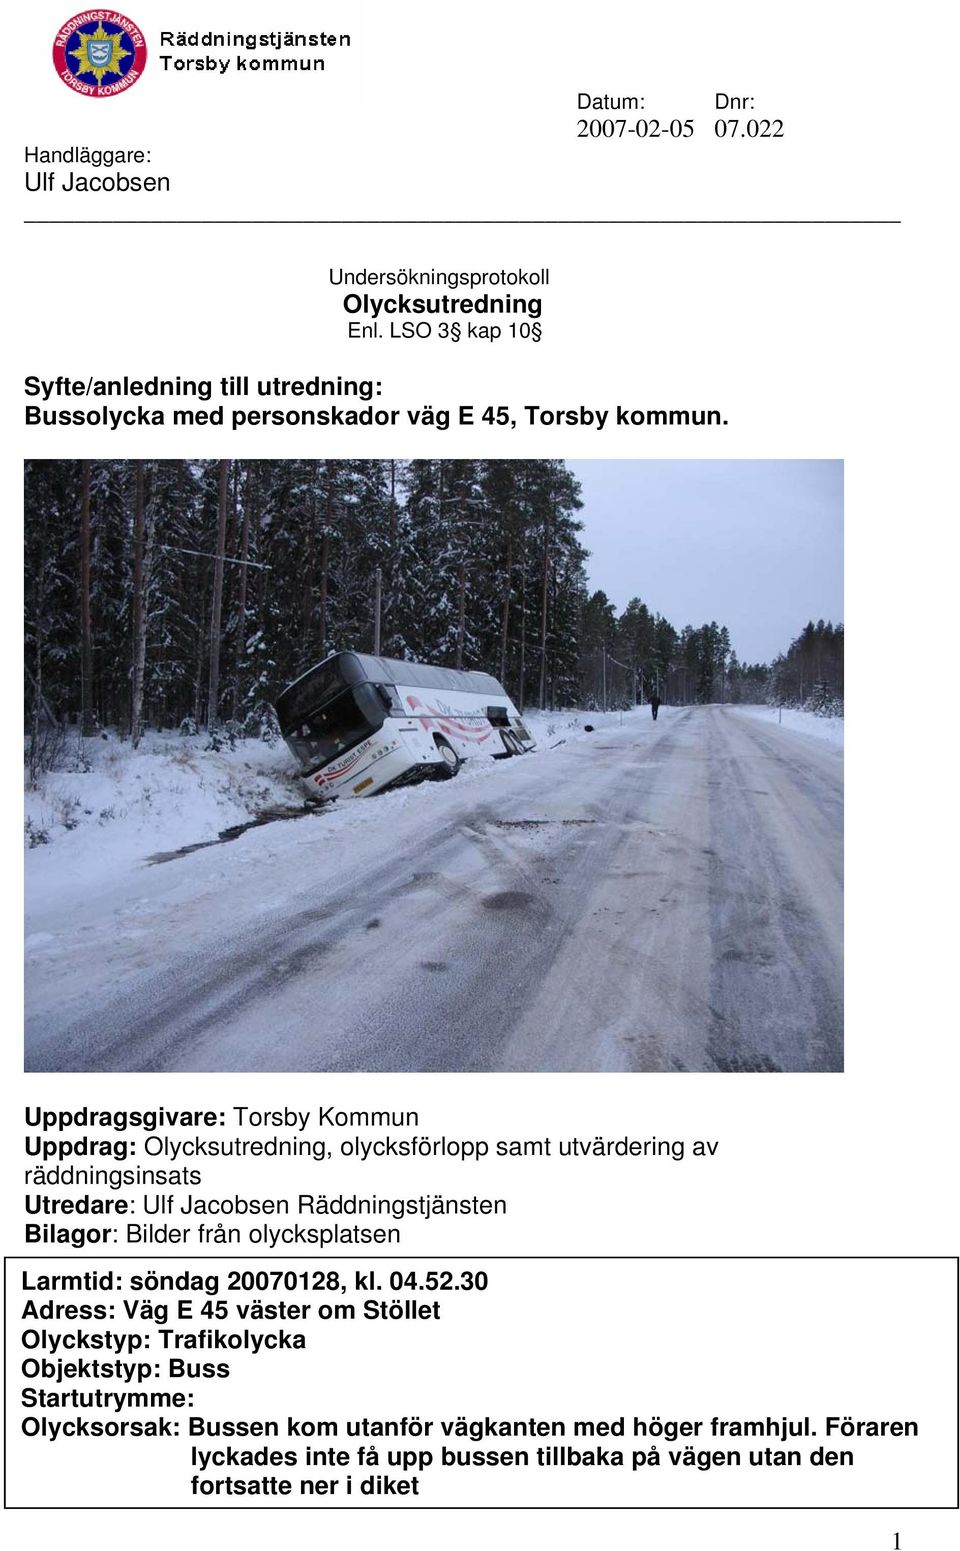 Uppdragsgivare: Torsby Kommun Uppdrag: Olycksutredning, olycksförlopp samt utvärdering av räddningsinsats Utredare: Ulf Jacobsen Räddningstjänsten Bilagor: Bilder